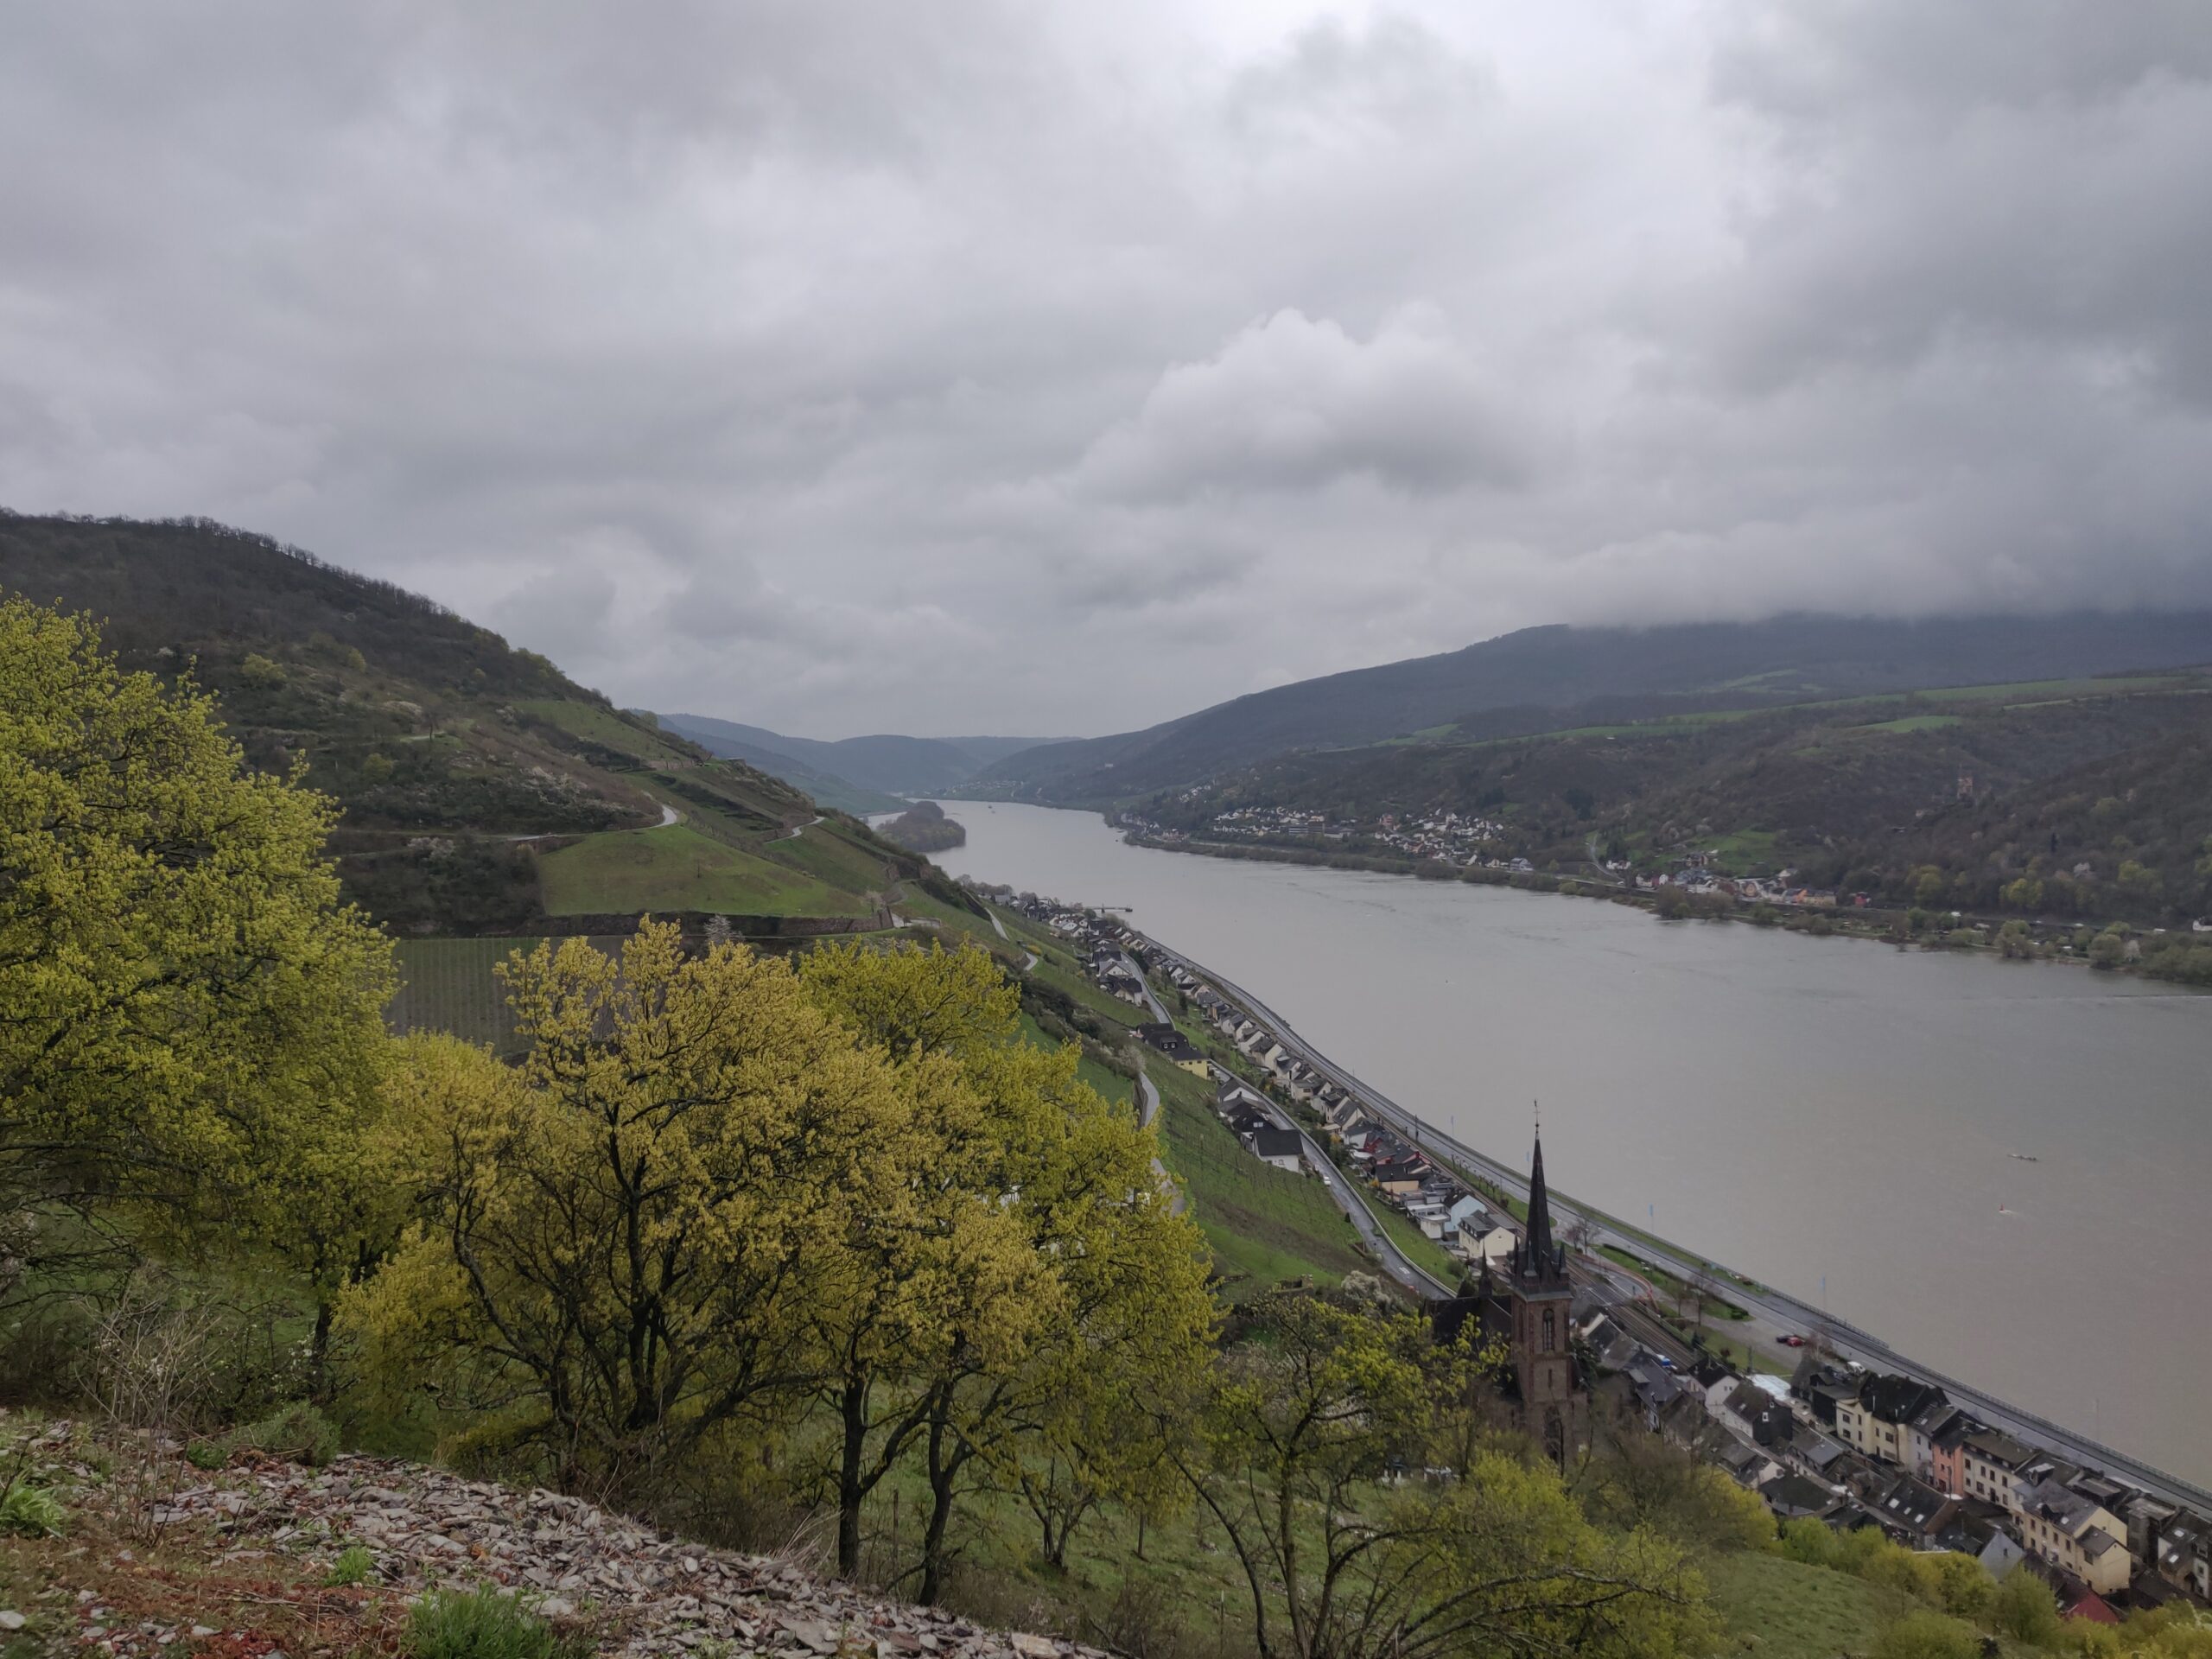 Lorchhausen und der weitere Weg oberhalb des Rheins